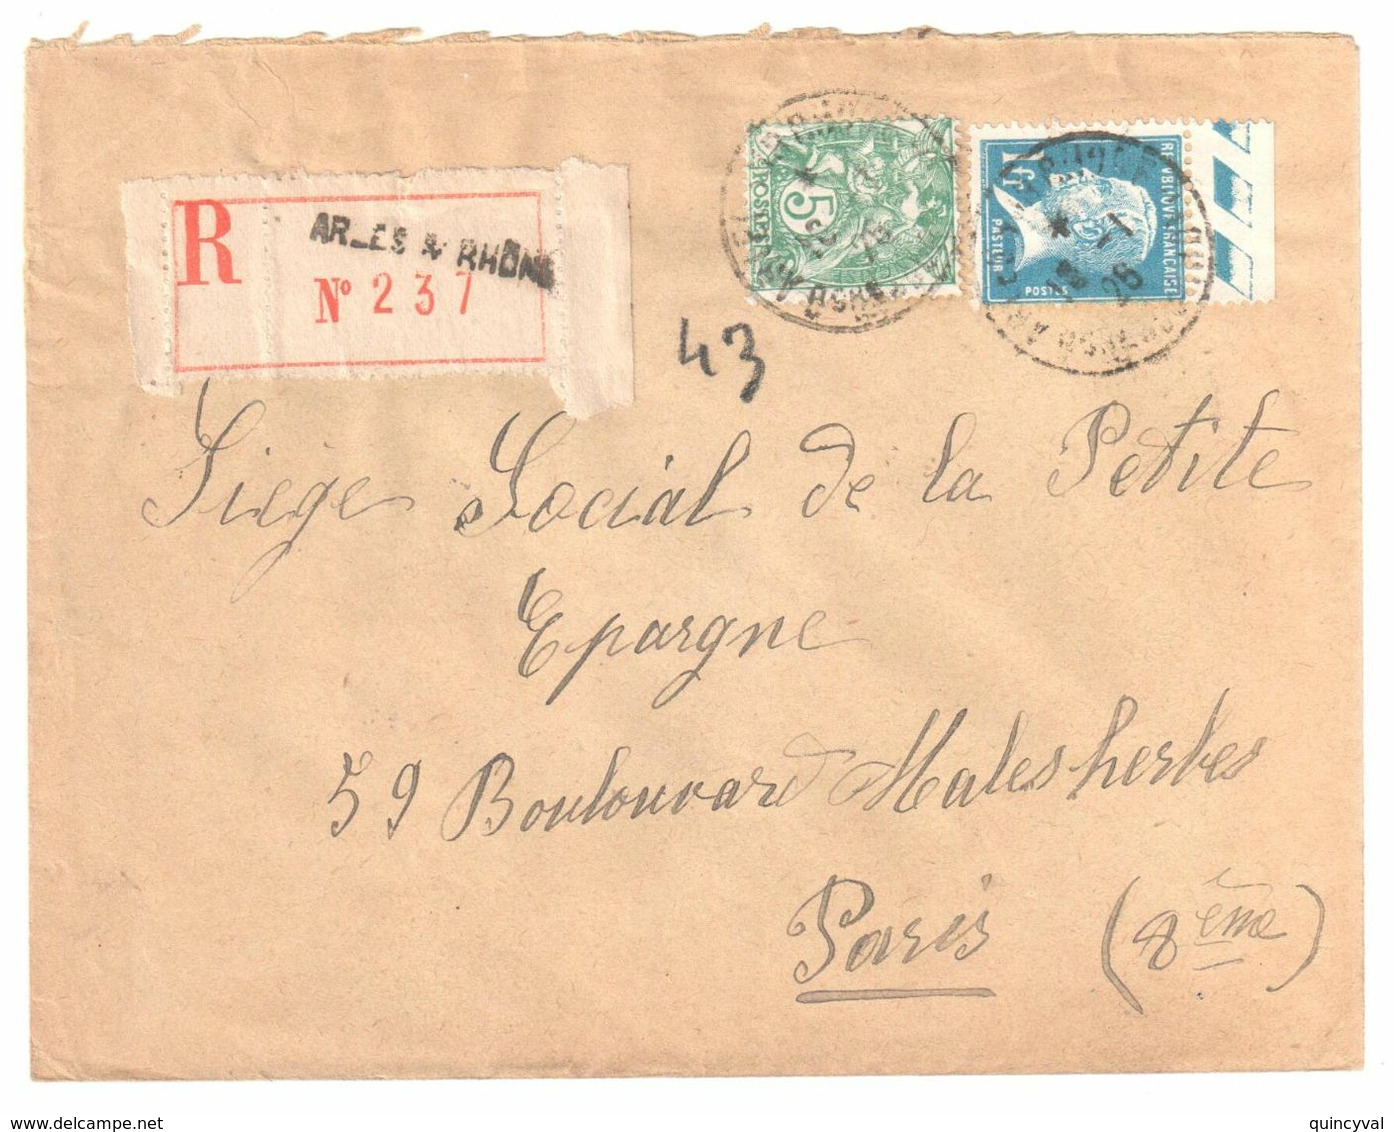 ARLES S RHONE Lettre Recommandée 1 F Pasteur Bord De Feuille 5c Blanc Yv 111 179 Ob 18 1 1926 - Cartas & Documentos